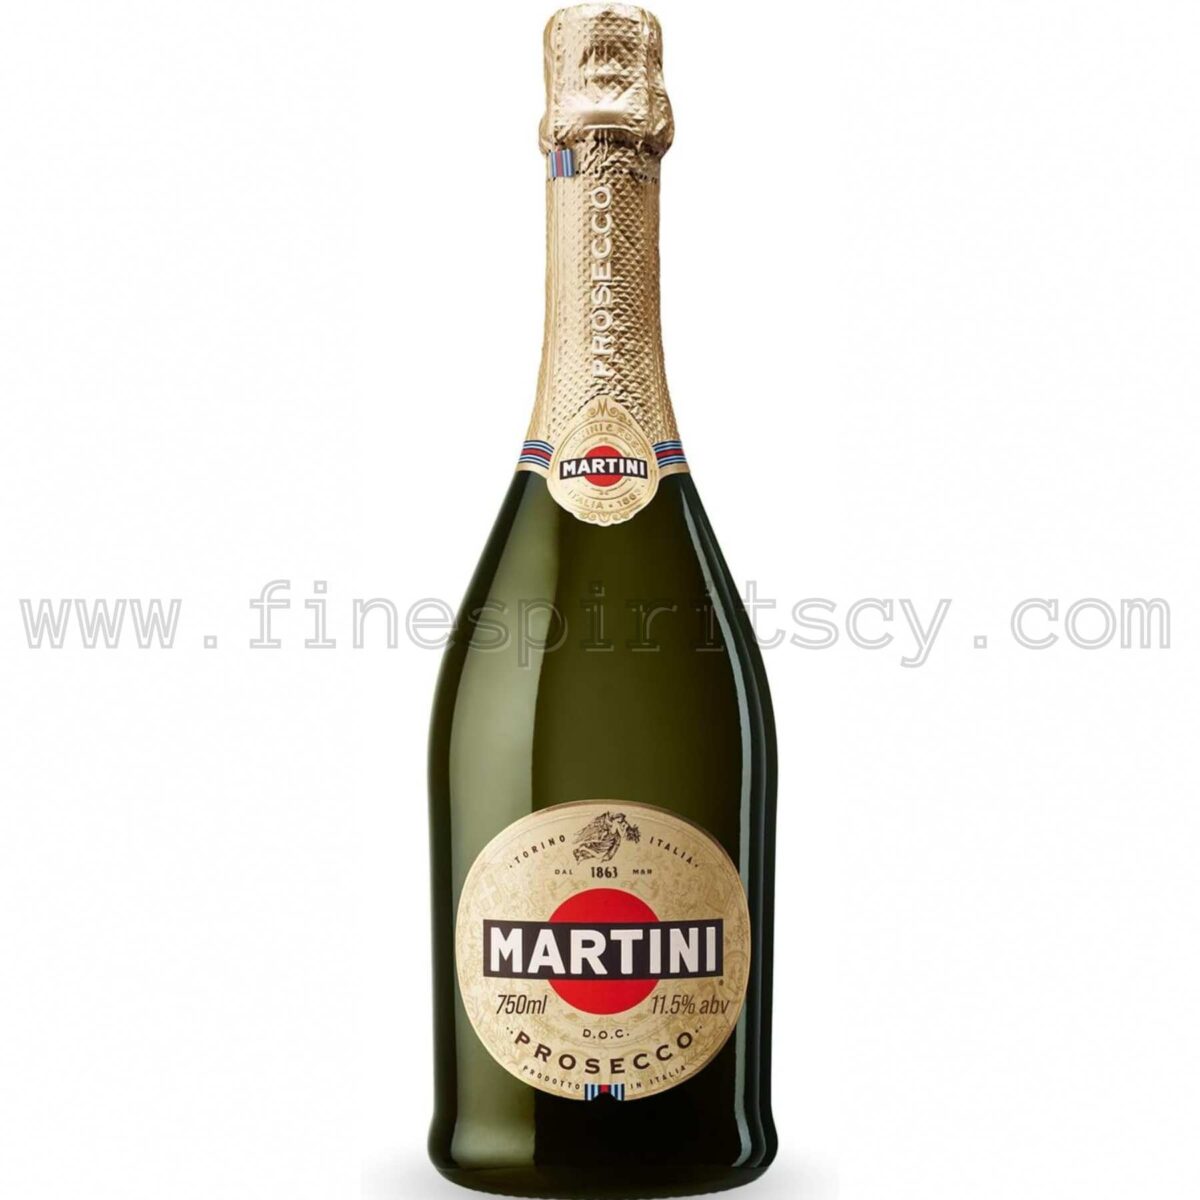 Martini Prosecco CY 75cl 0.75L Cyprus Price FSCY Sparkling Order Buy 750ml